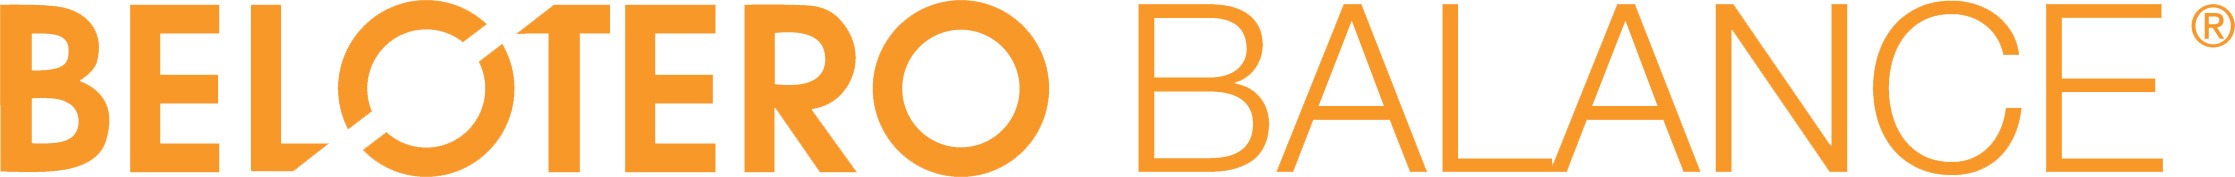 Belotero Balance® Logo